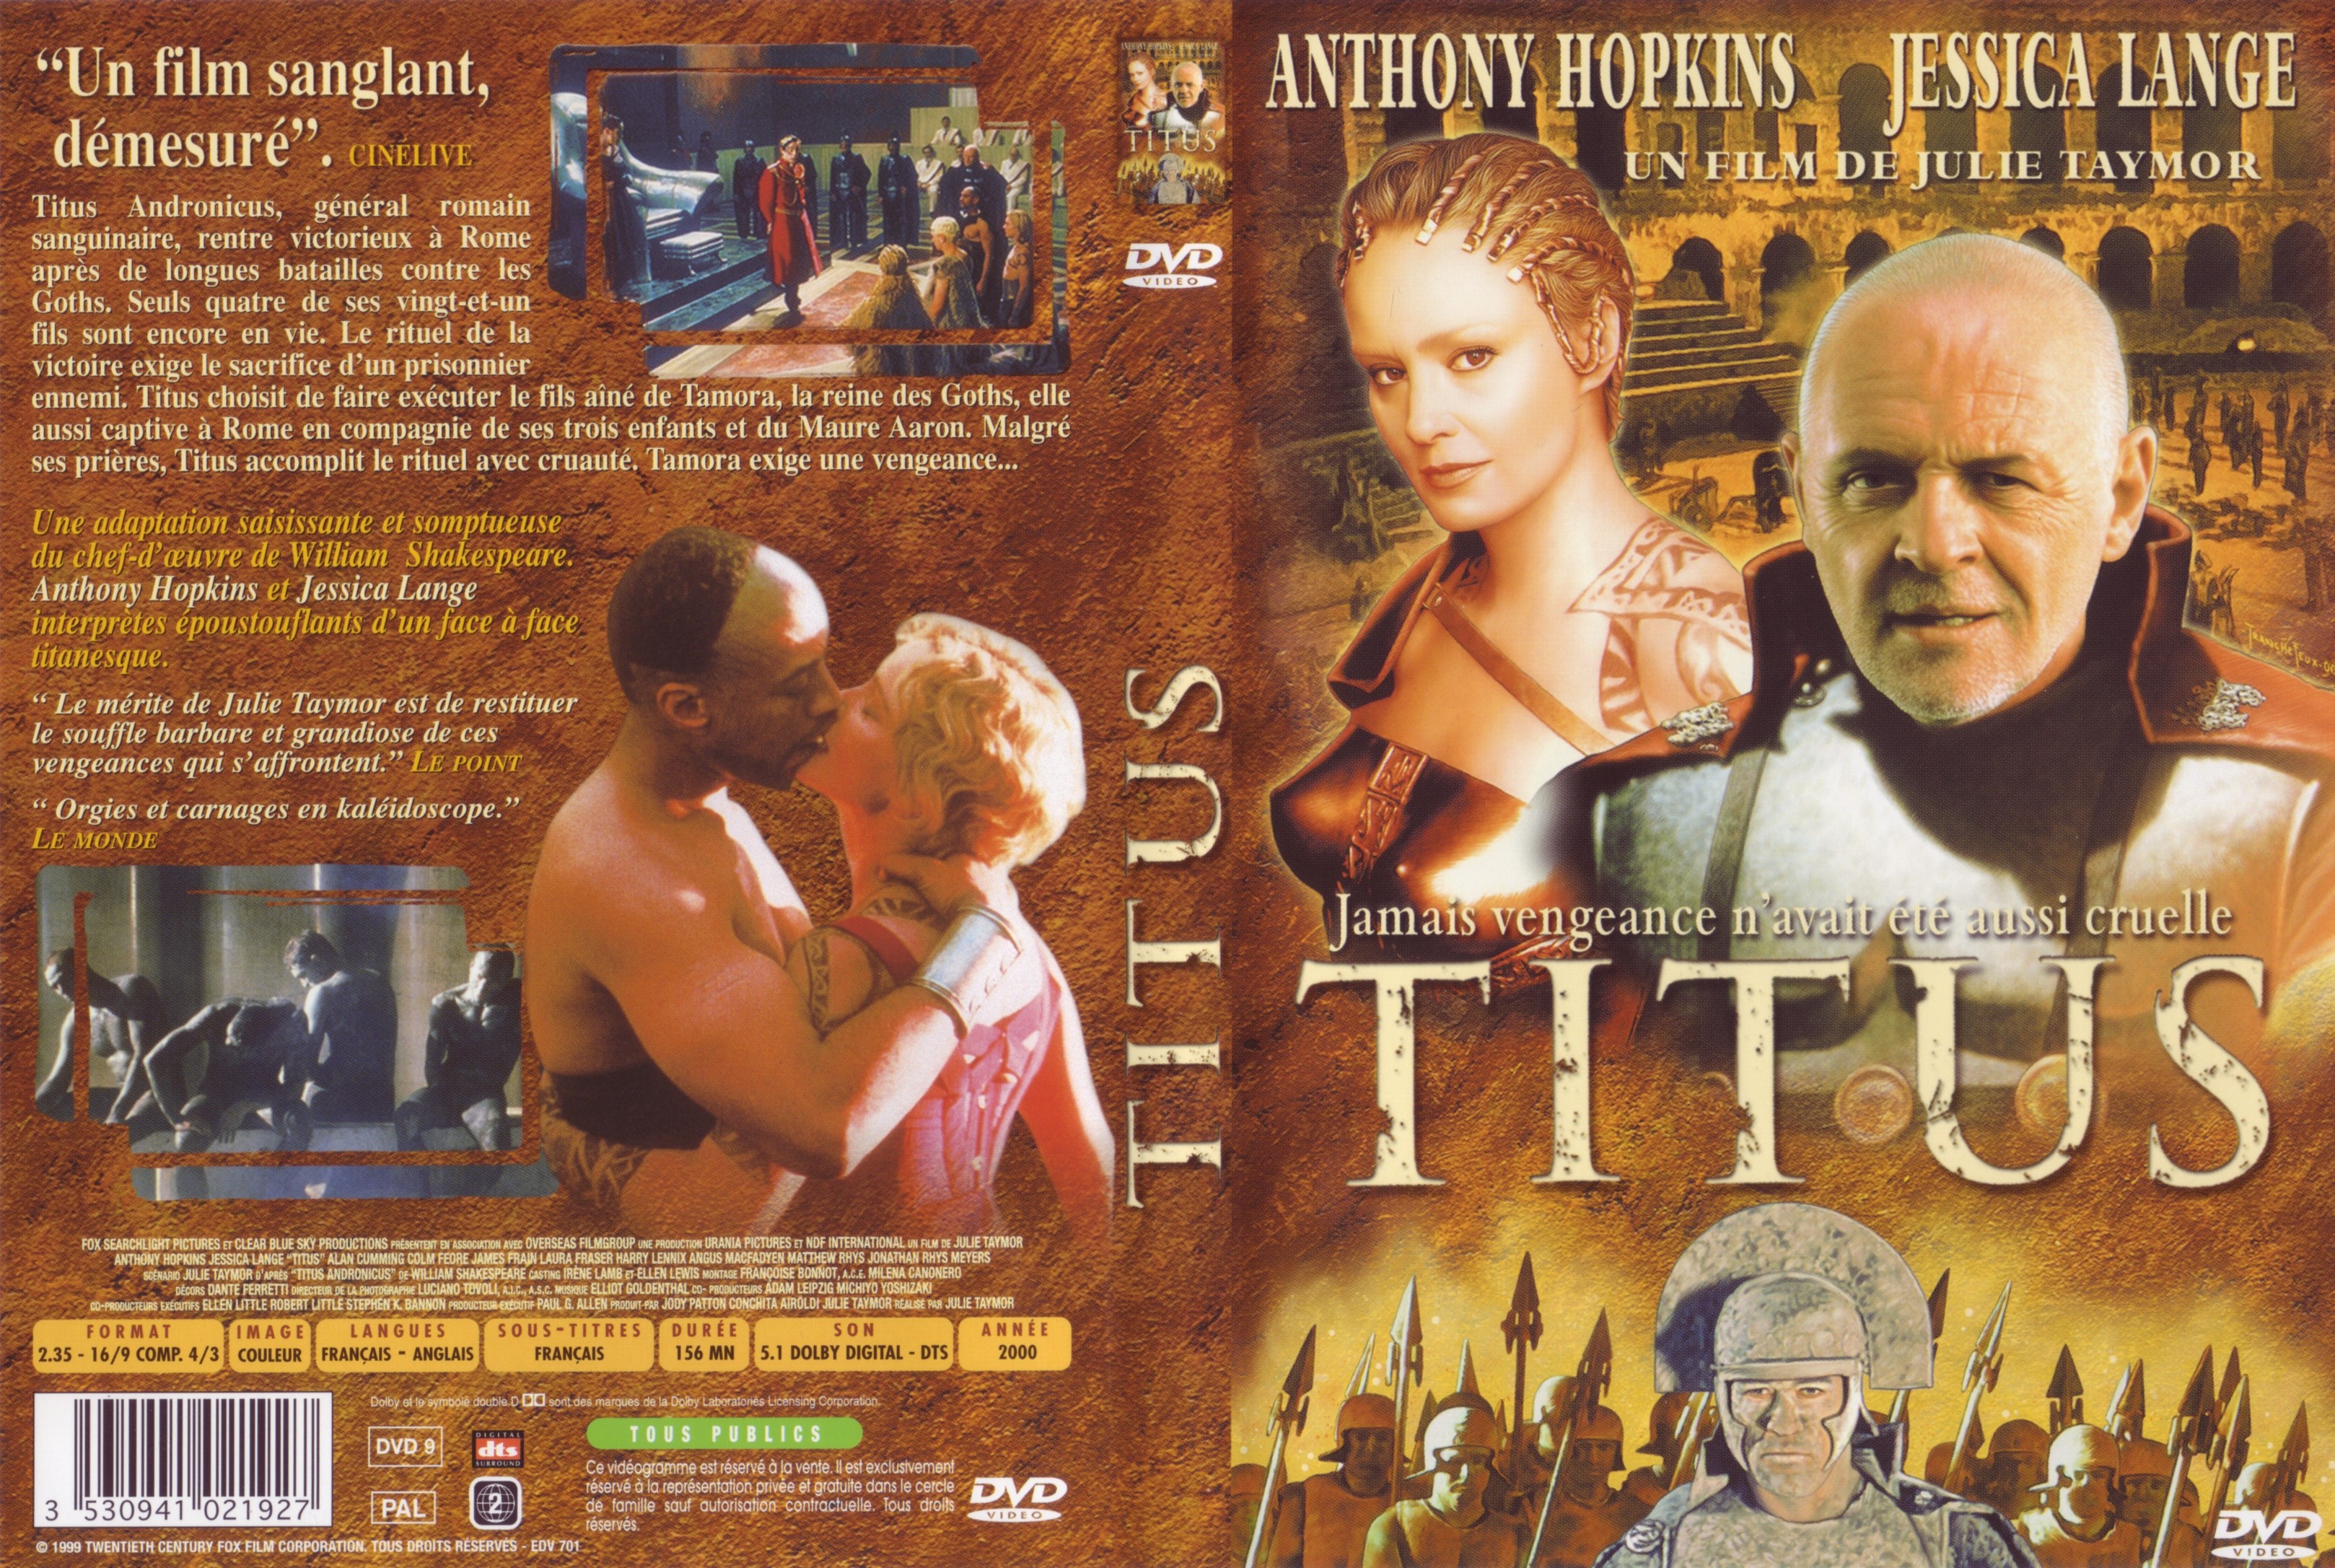 Jaquette DVD Titus